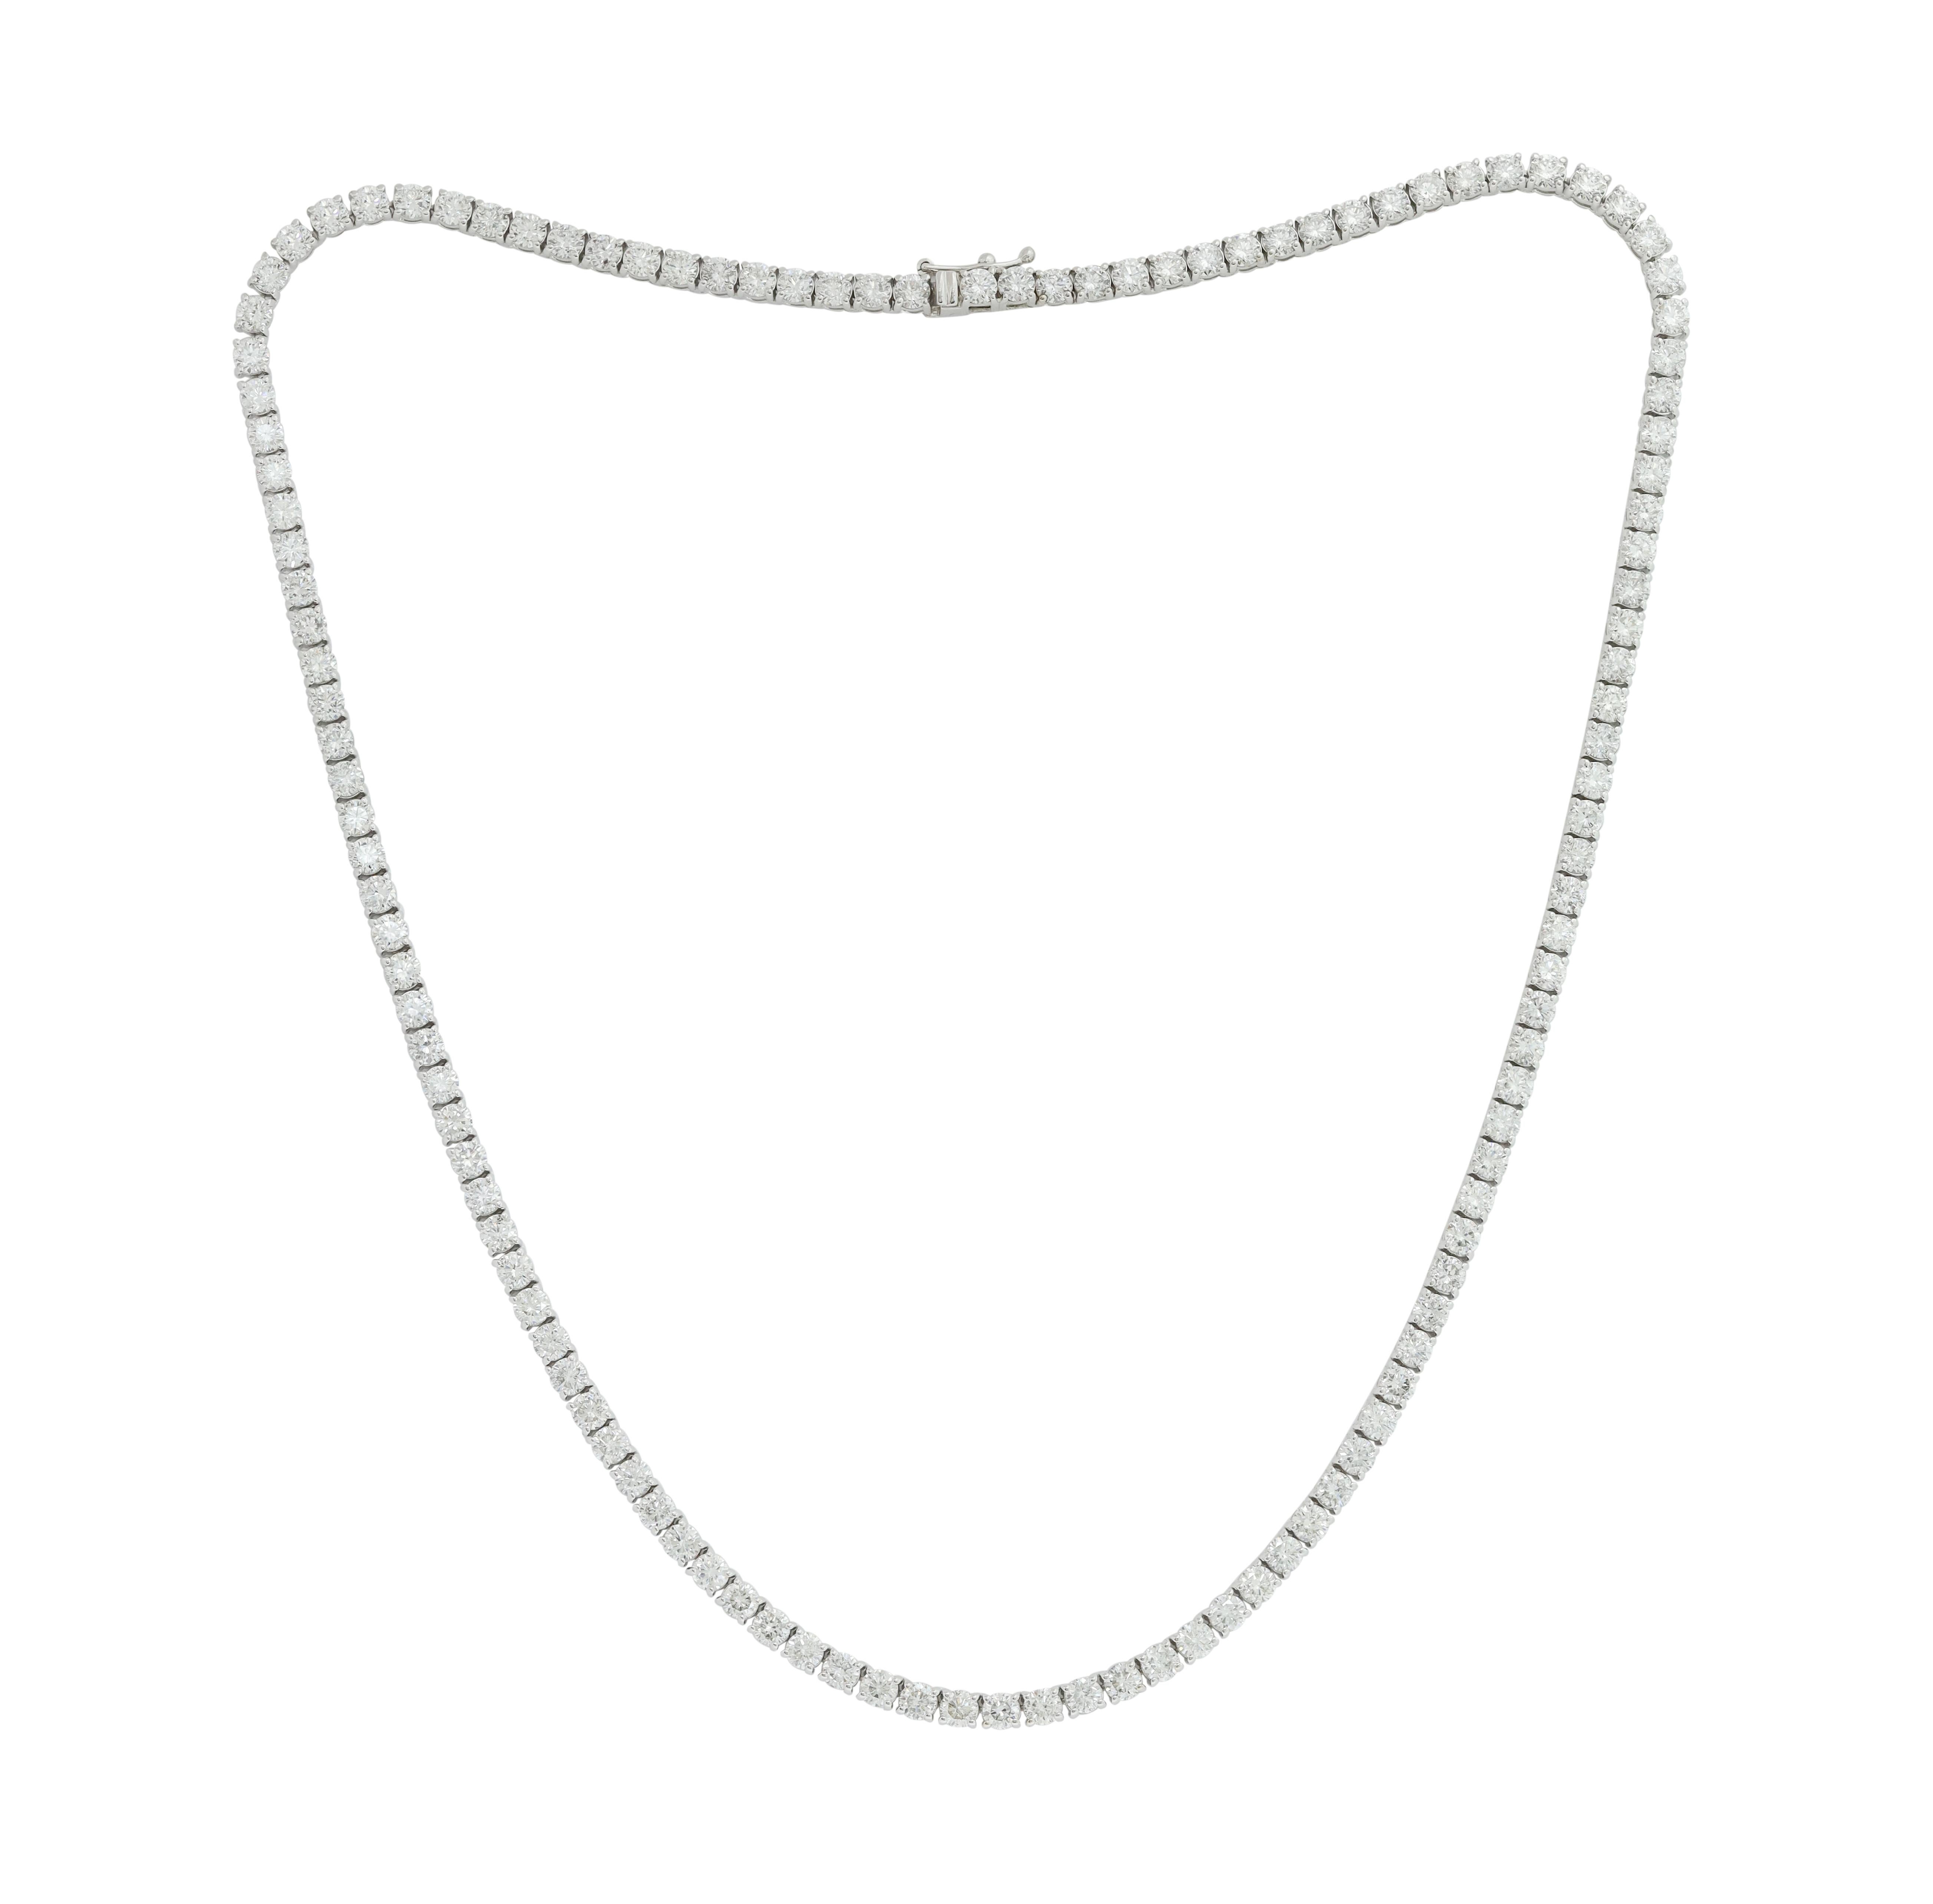 14K White Gold Diamond Straight Line Tennis Halskette verfügt über 12,50 Karat von Diamanten. Diana M. ist seit über 35 Jahren ein führender Anbieter von hochwertigem Schmuck.
Diana M ist ein One-Stop-Shop für alle Ihre Schmuckeinkäufe und führt